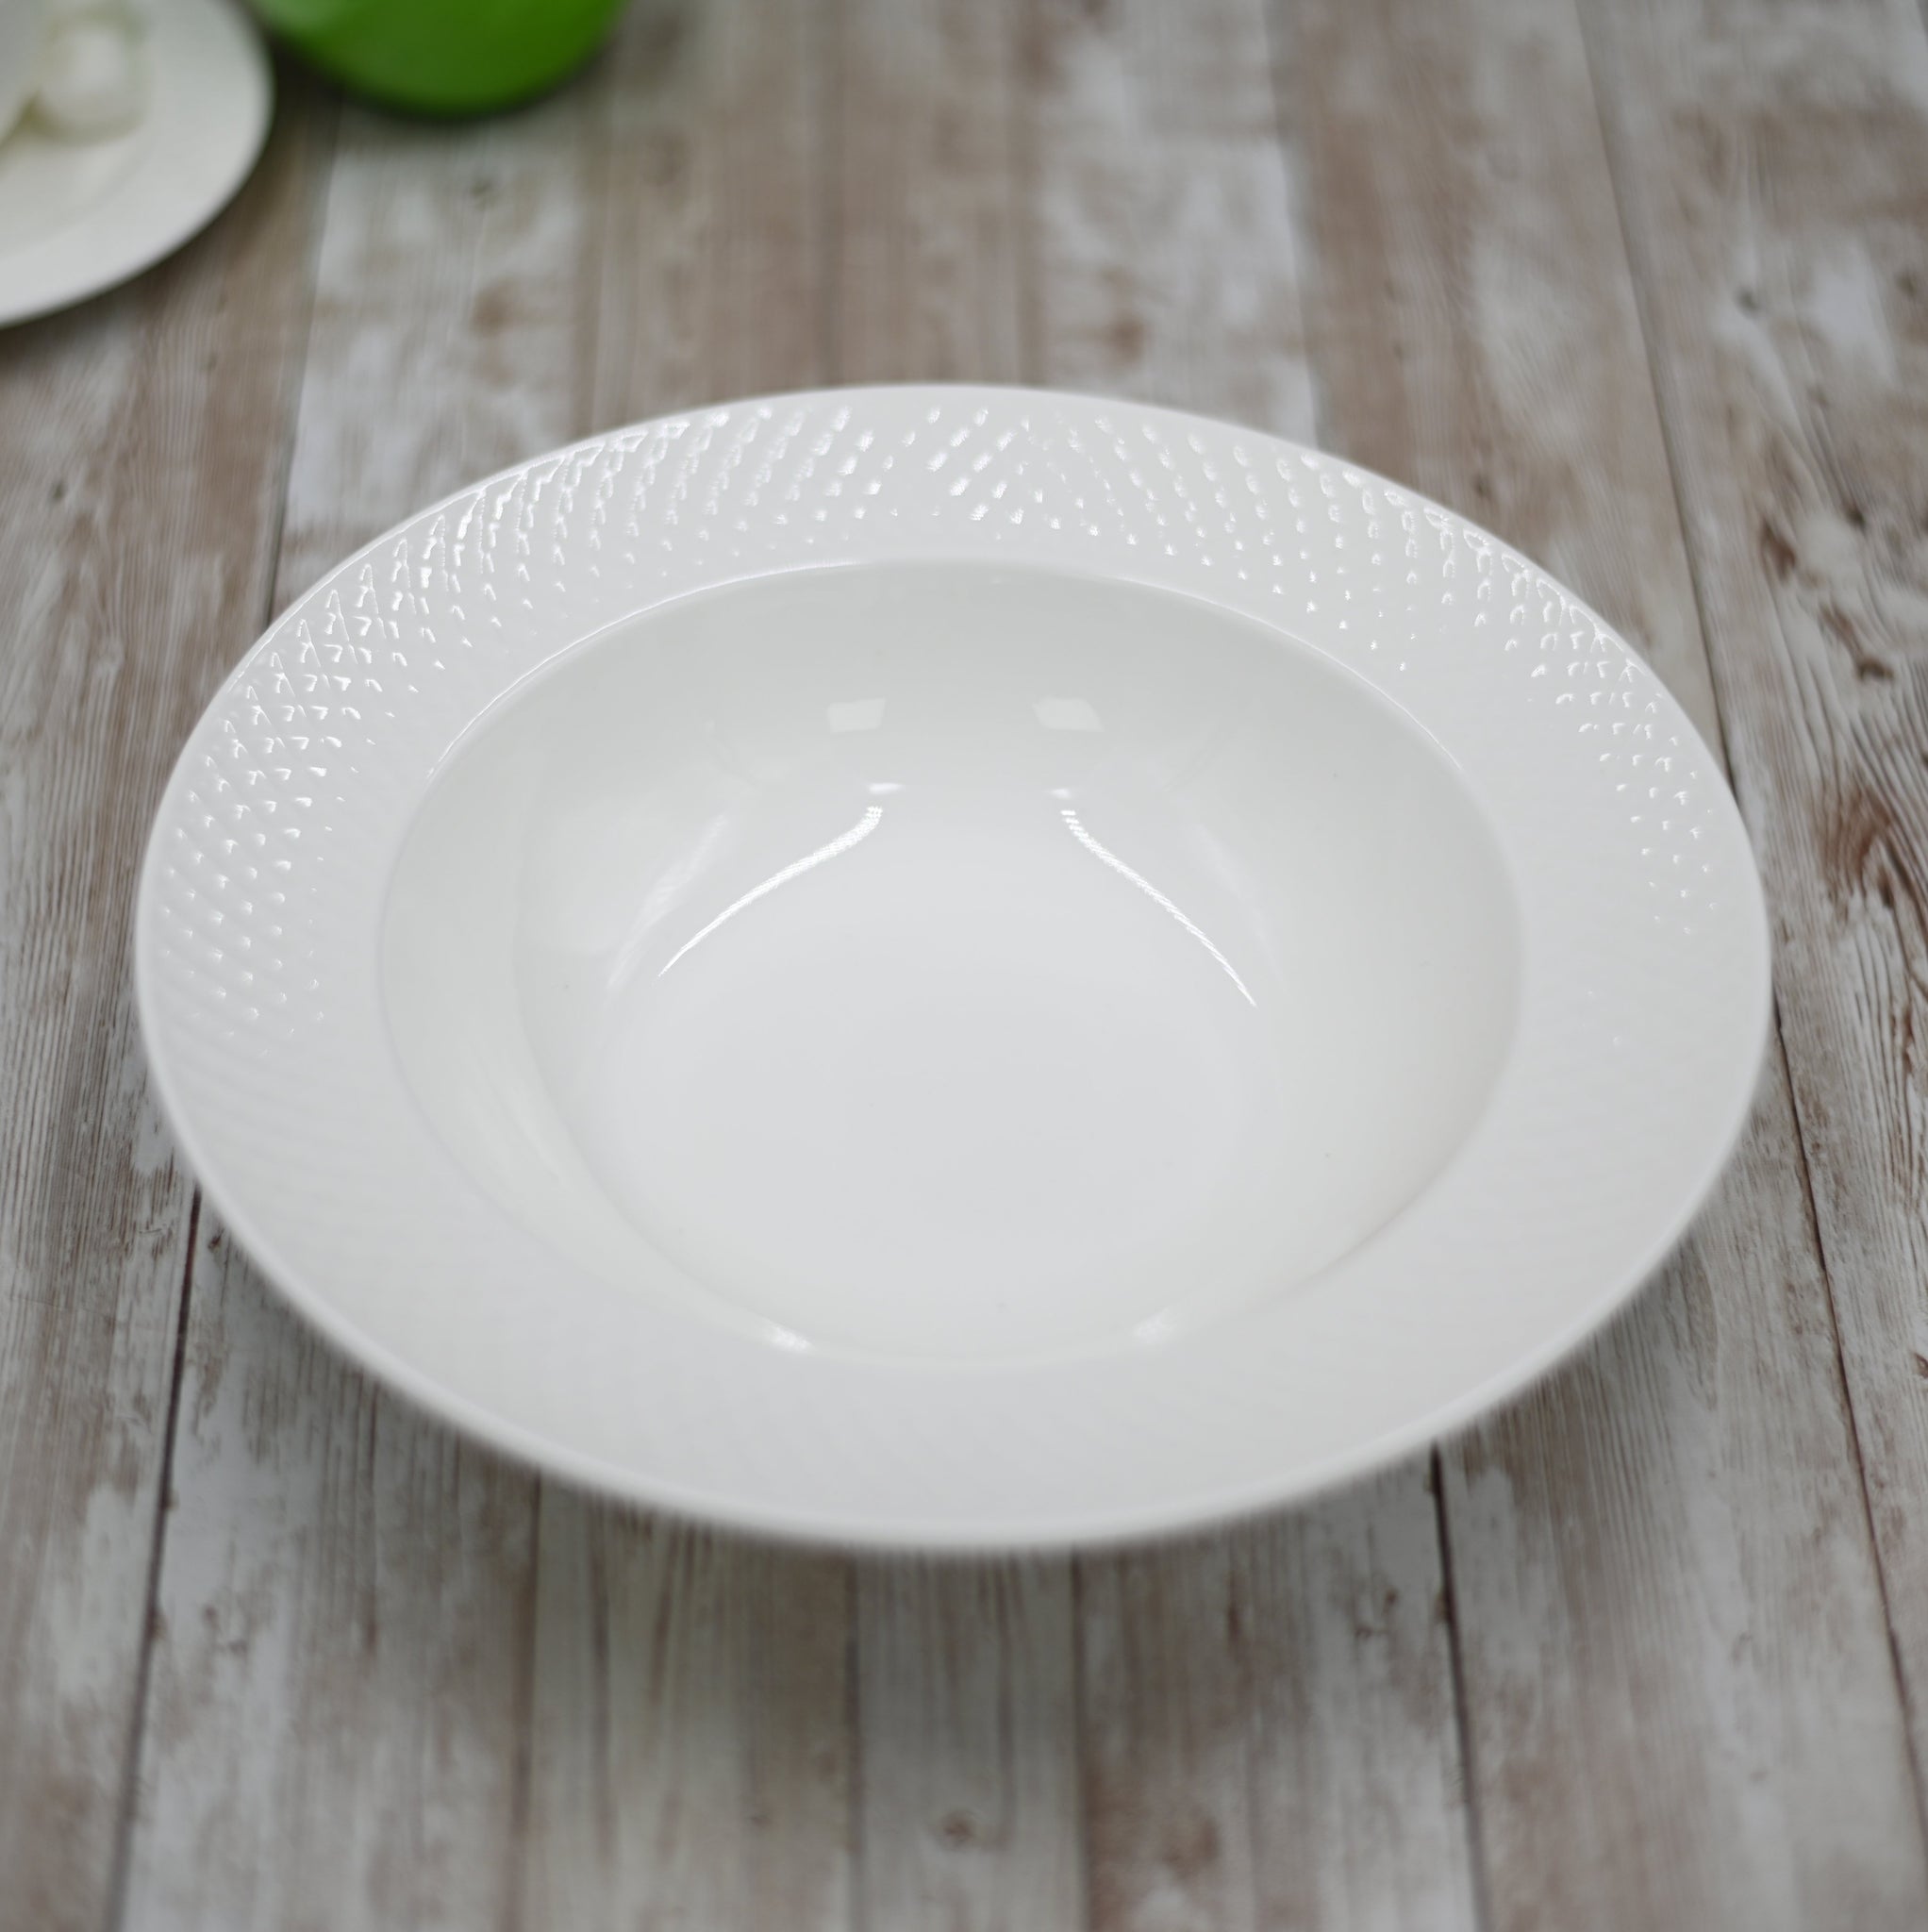 Wilmax WL-880100/A 8-Inch Julia Round White Porcelain Dessert Plate, 6/CS